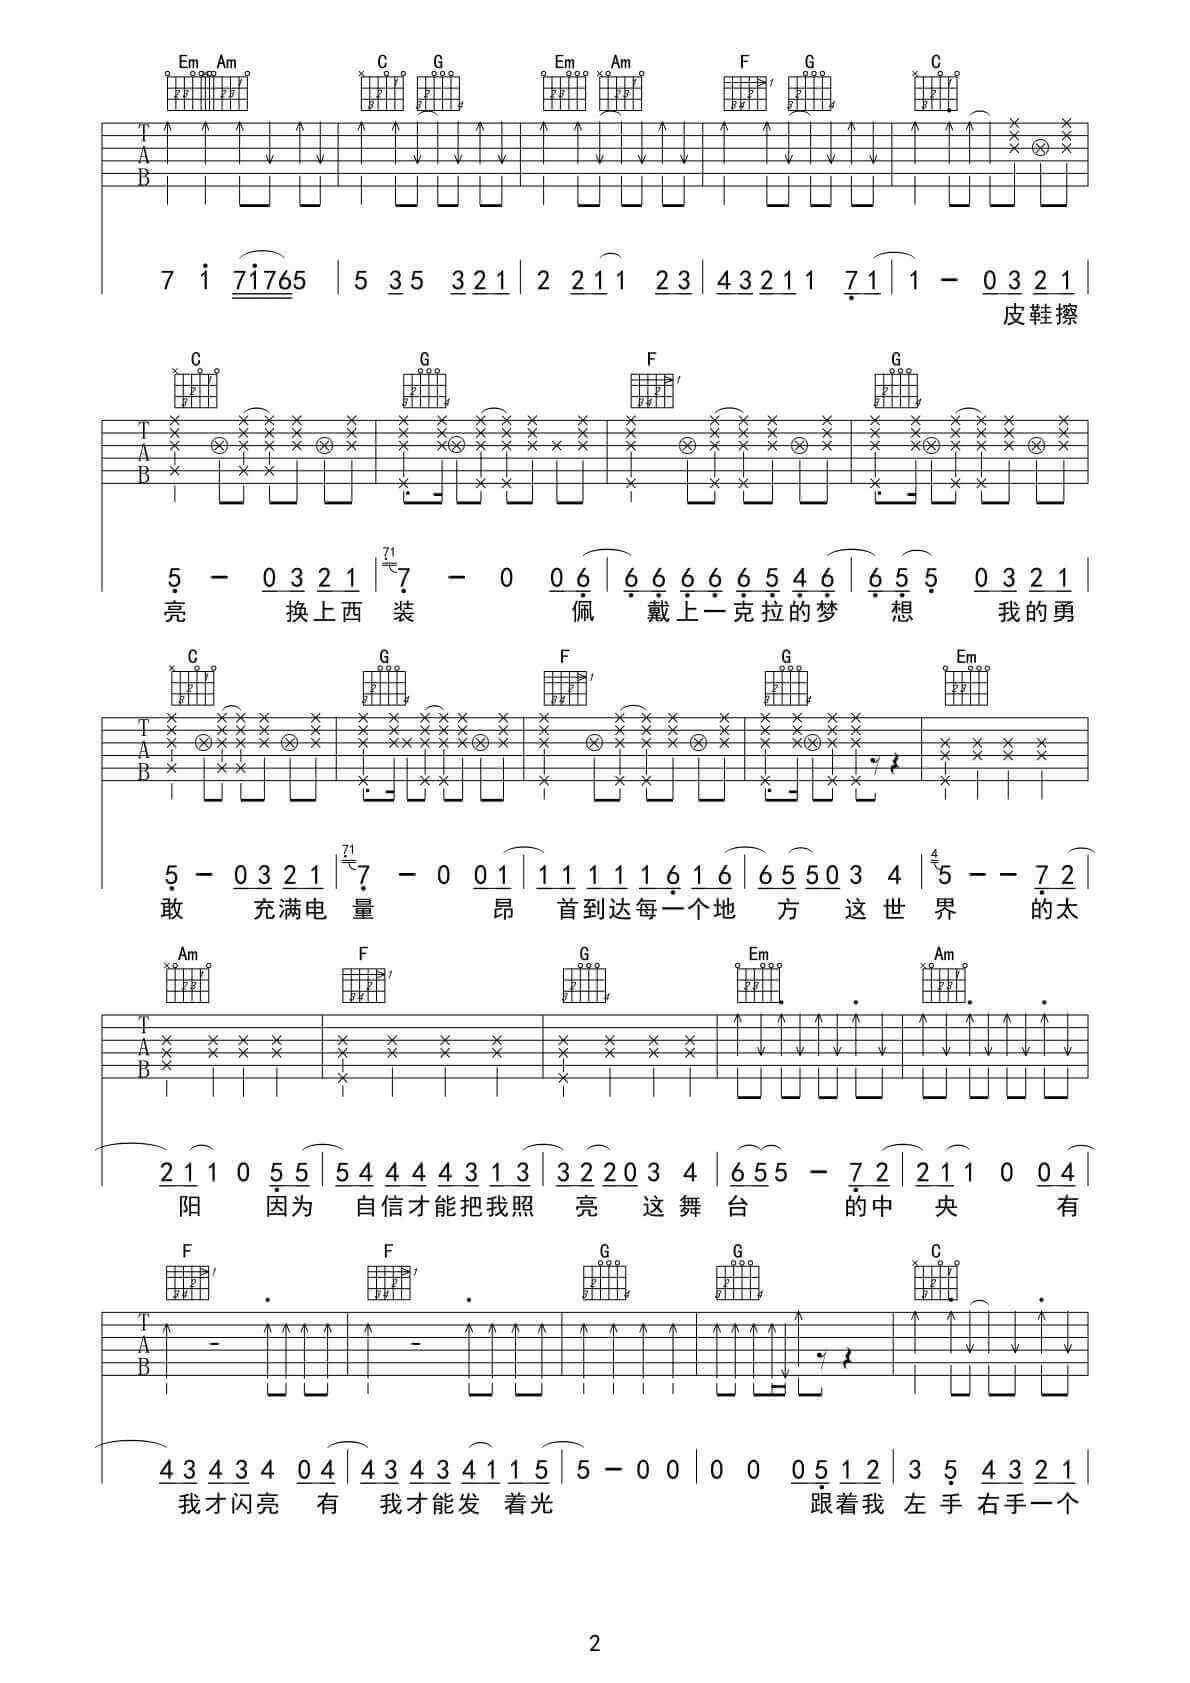 青春修炼手册吉他谱-C调六线谱-简单版-TFBOYS1